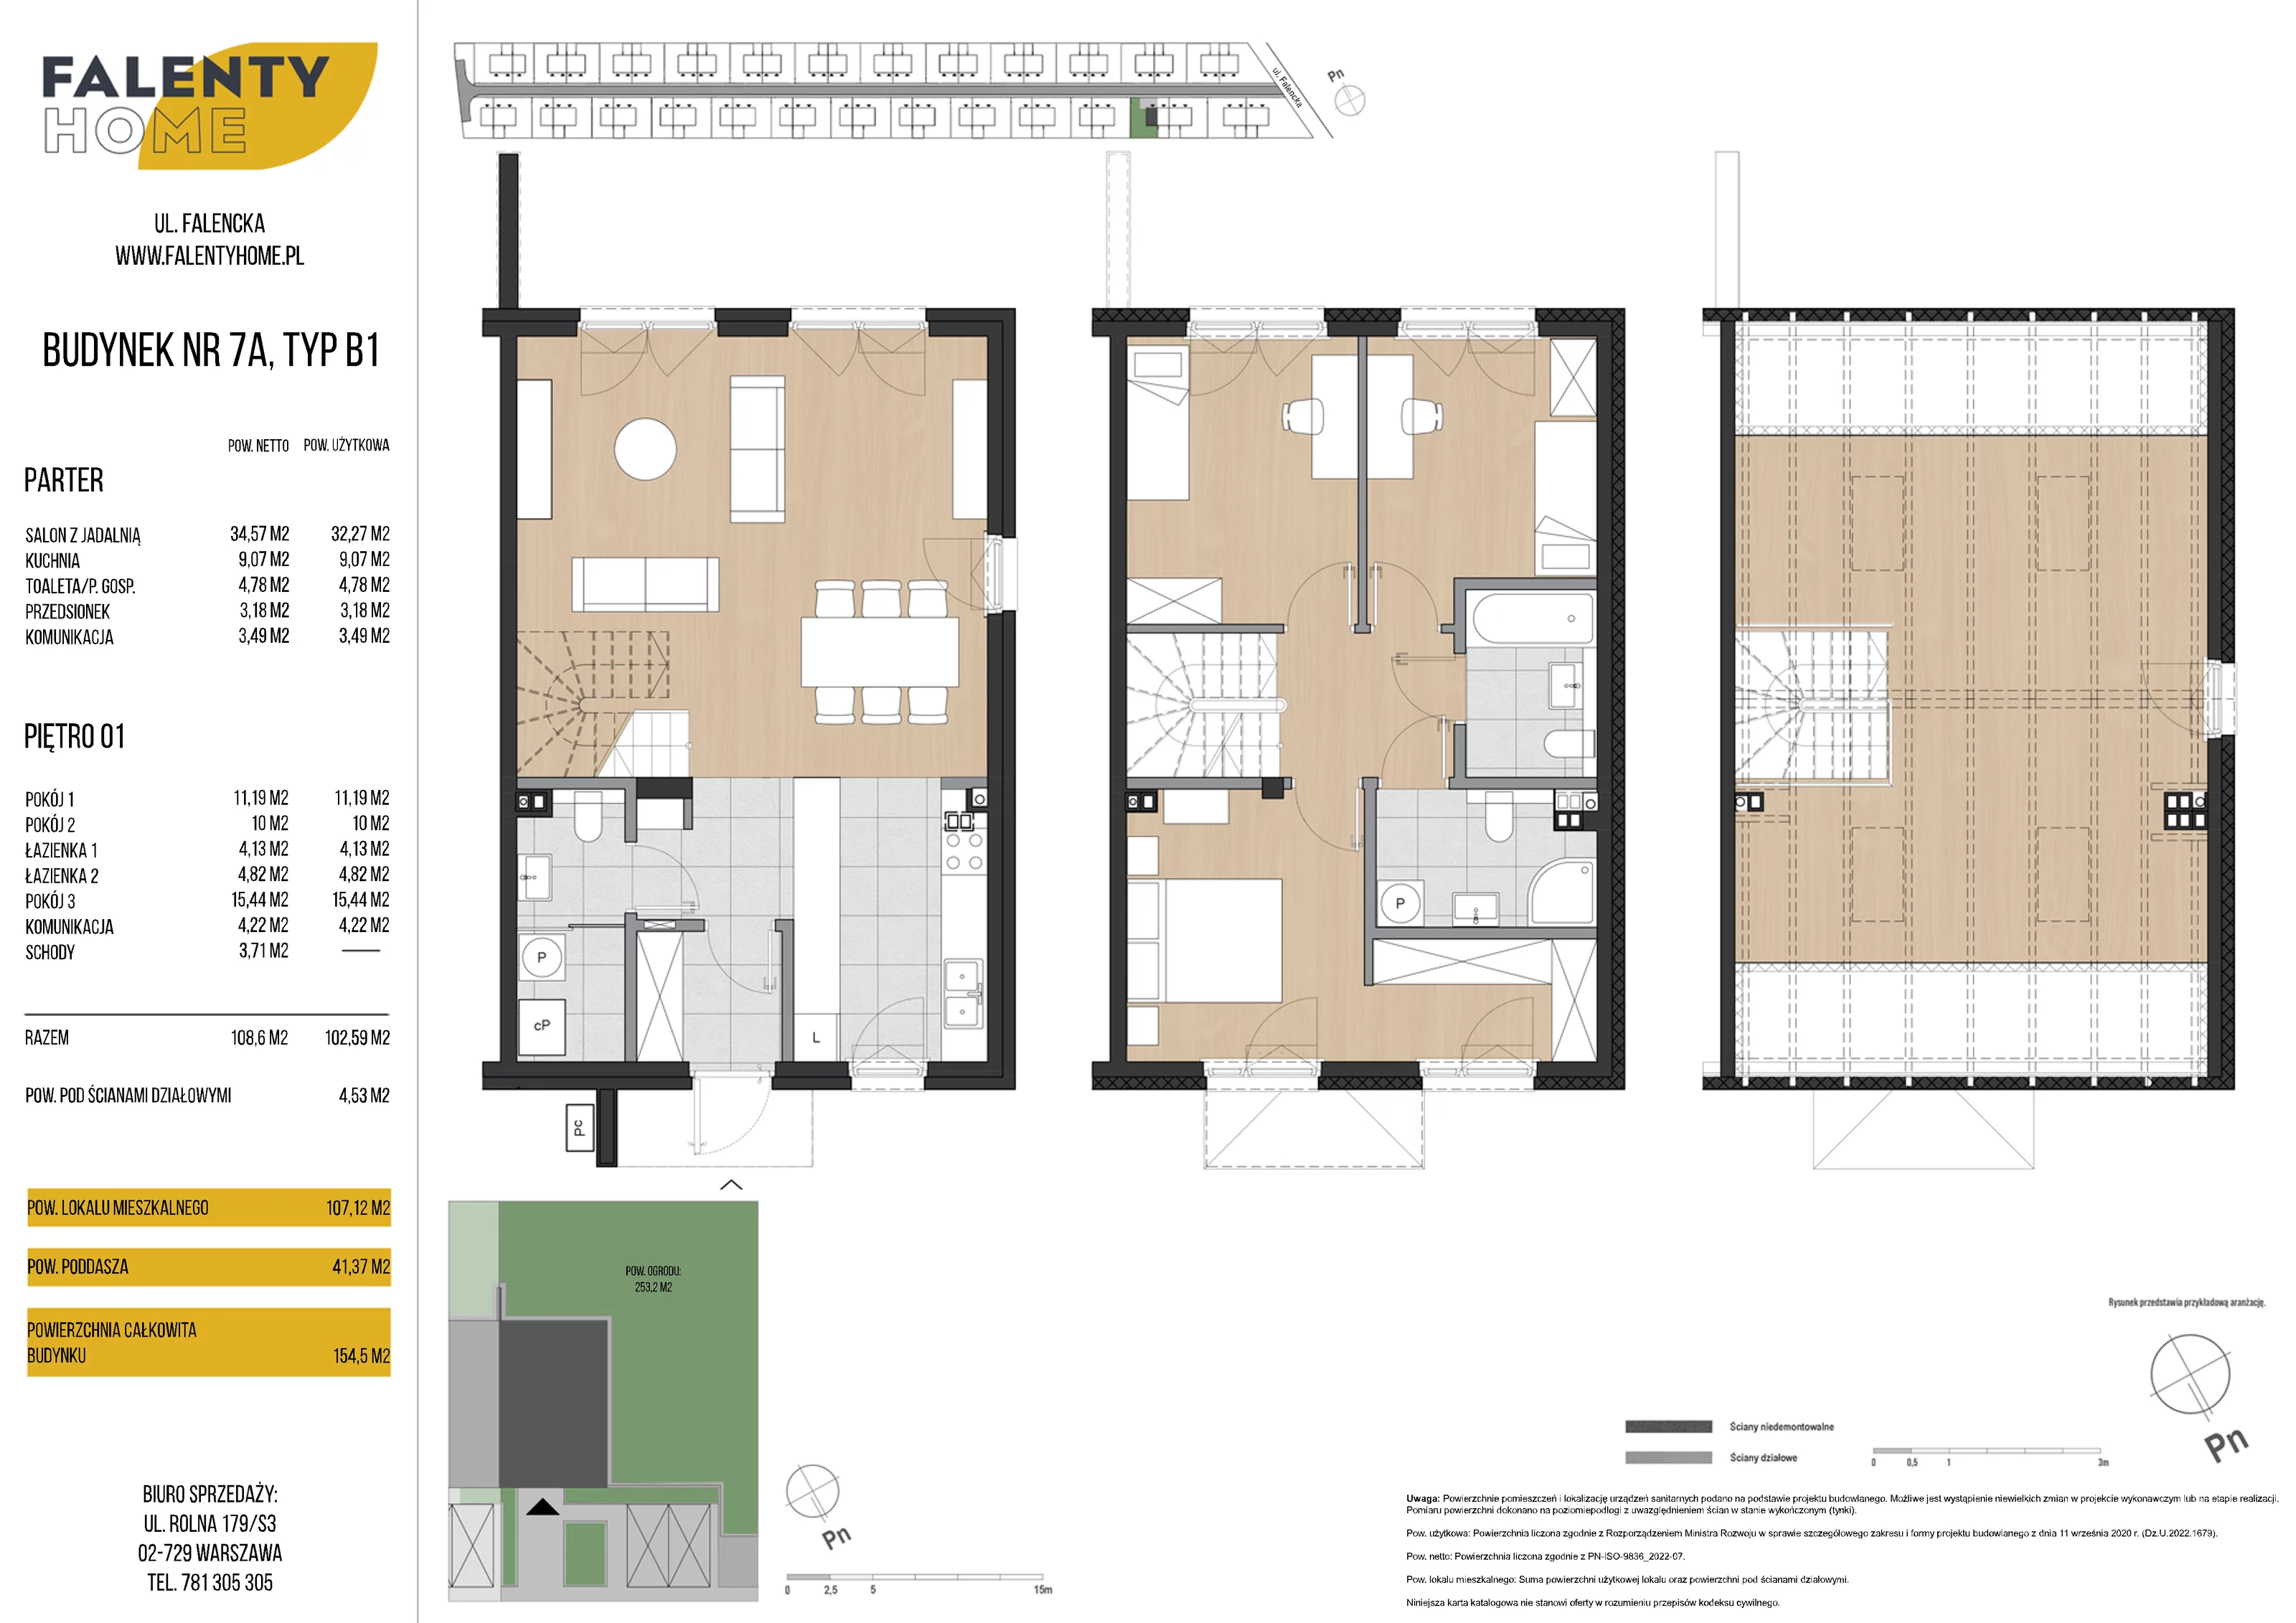 Dom 107,12 m², oferta nr 7A, Falenty Home, Falenty Duże, ul. Falencka